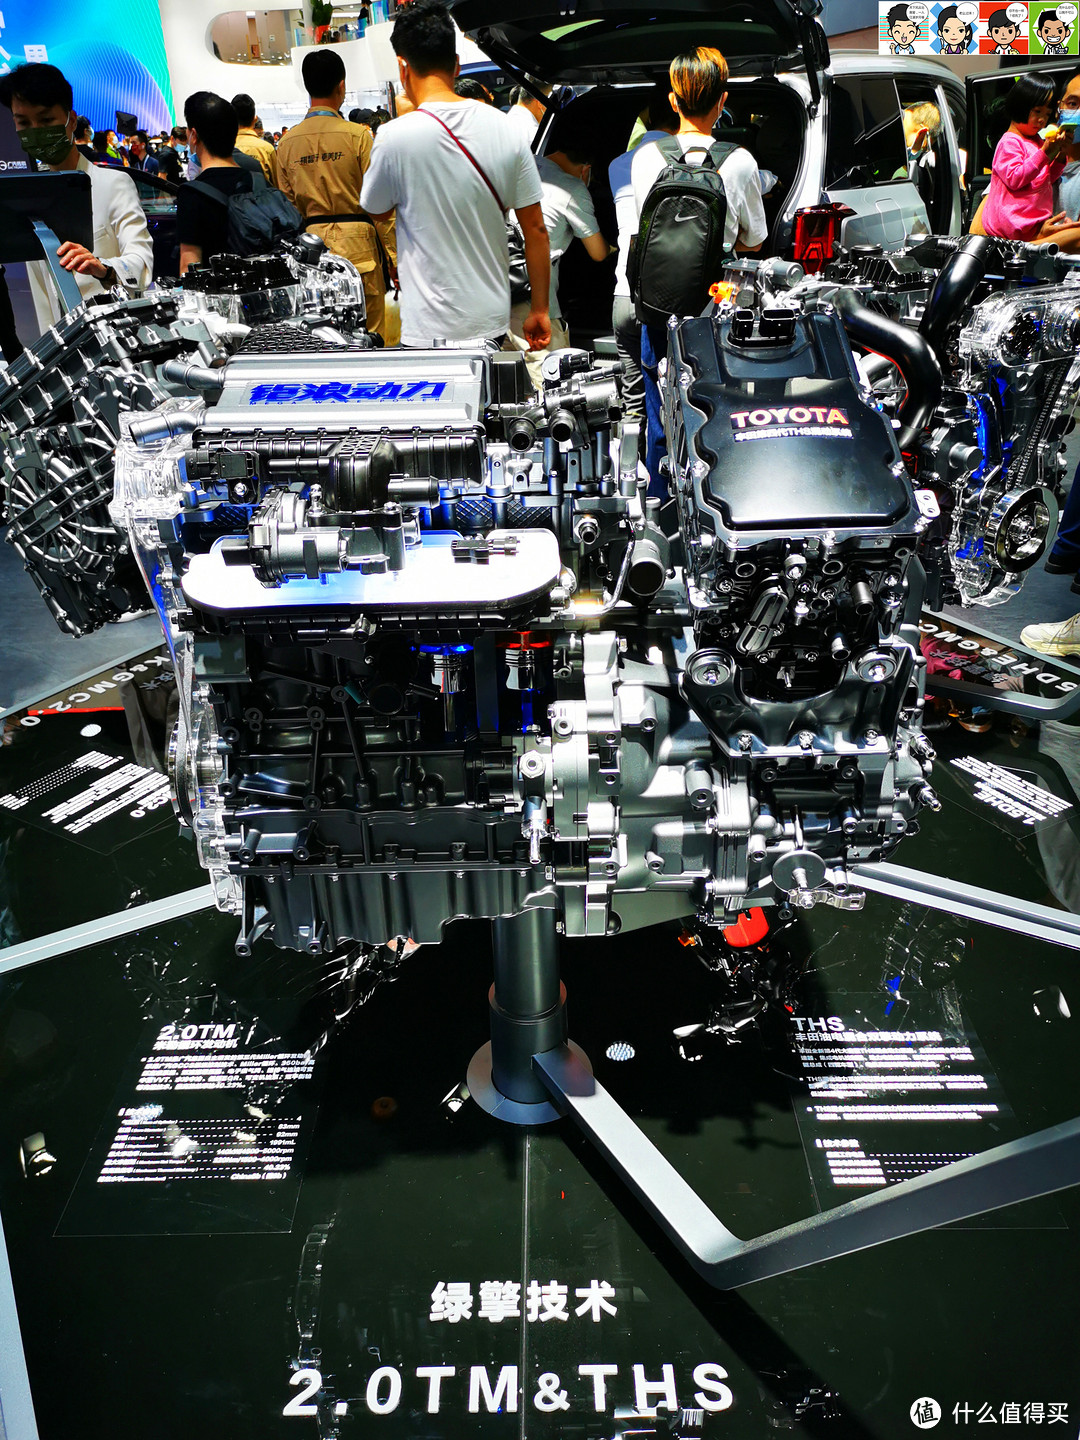 三、2.0TM＆THS，广汽自主研发的第三代2.0TM发动机匹配丰田第四代油电混合双擎动力系统（THS）。